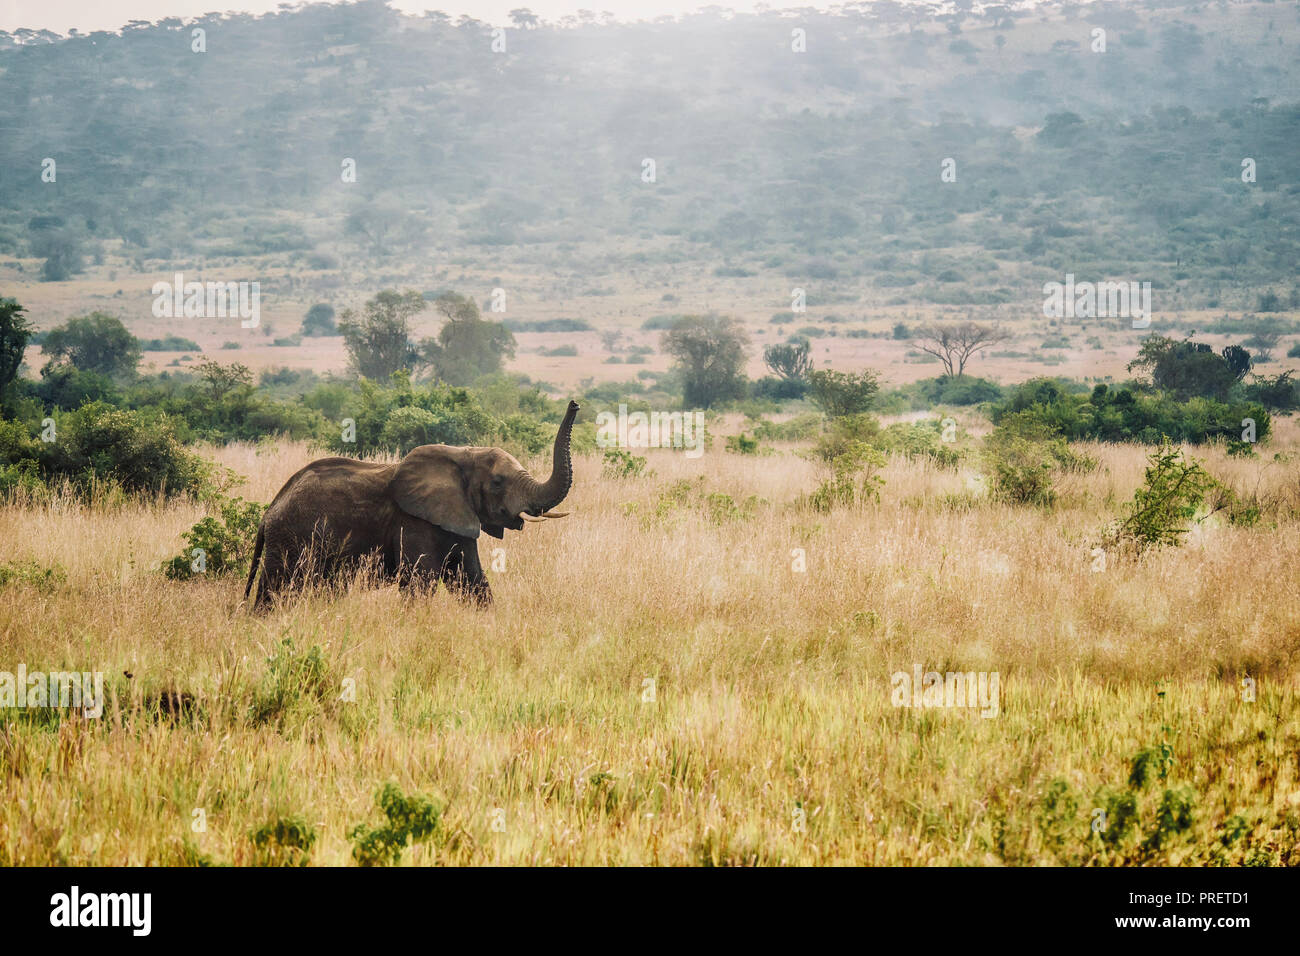 Un africano scena di paesaggio come una femmina solitaria dell' elefante africano (Loxodonta africana) passeggiate attraverso una savana erbosa con il suo tronco fino nell'aria. Foto Stock